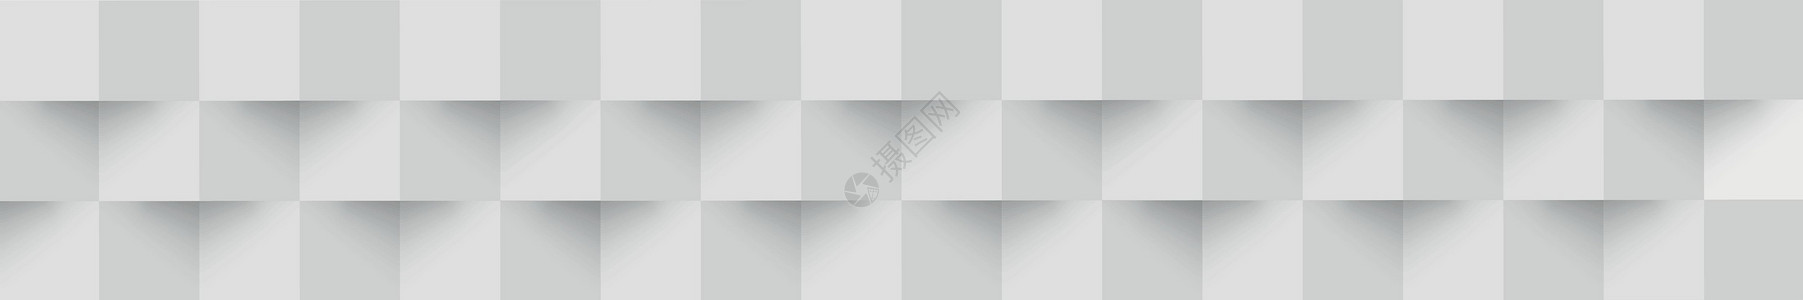 摘要白背景 网络模板 带阴影的方形  矢量艺术插图装饰品商业横幅墙纸几何学推介会马赛克折纸背景图片